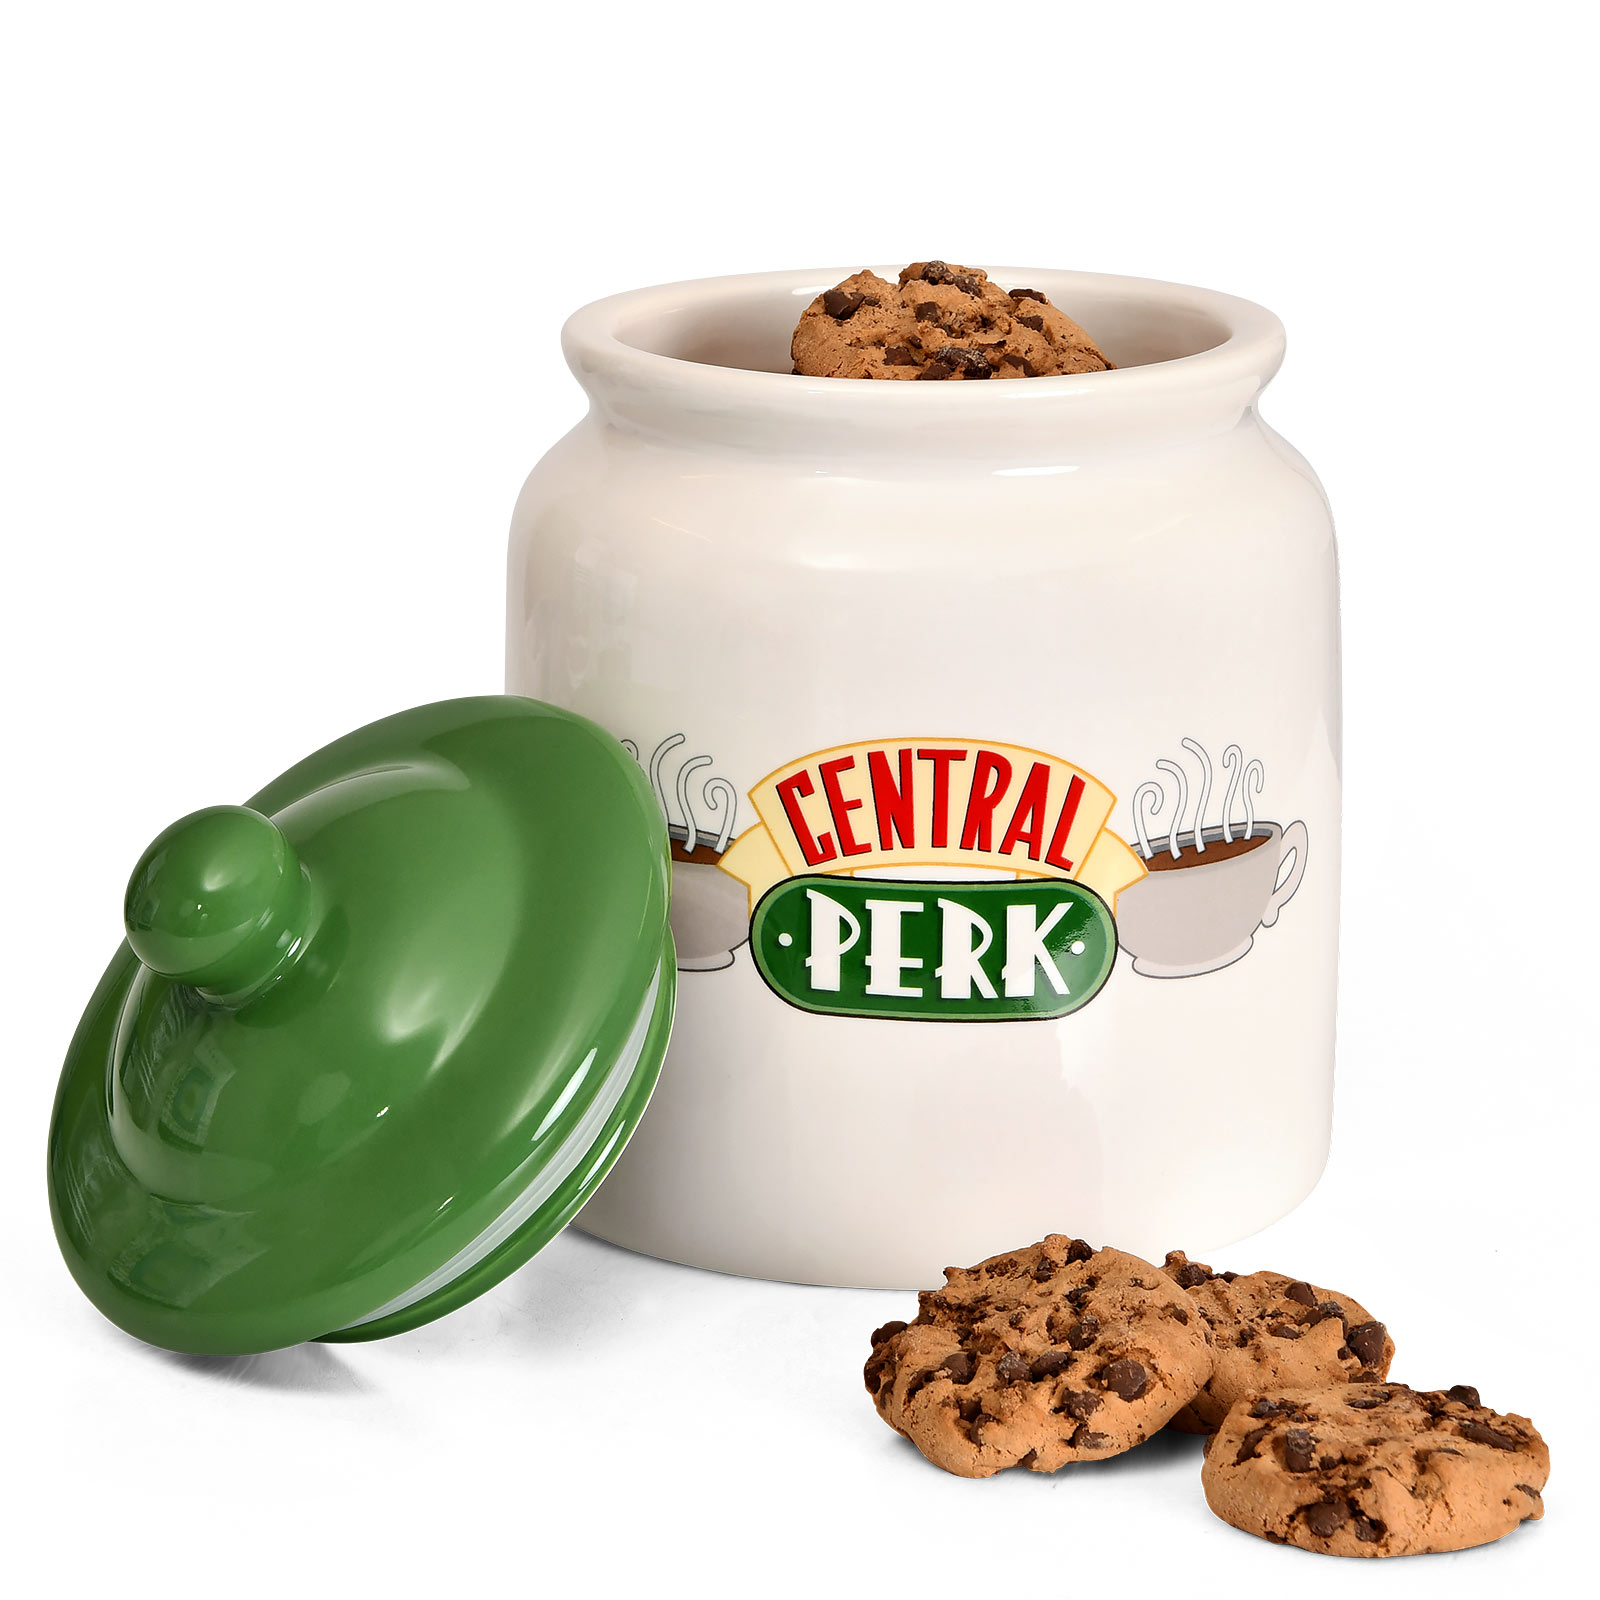 Friends - Boîte à biscuits Central Perk